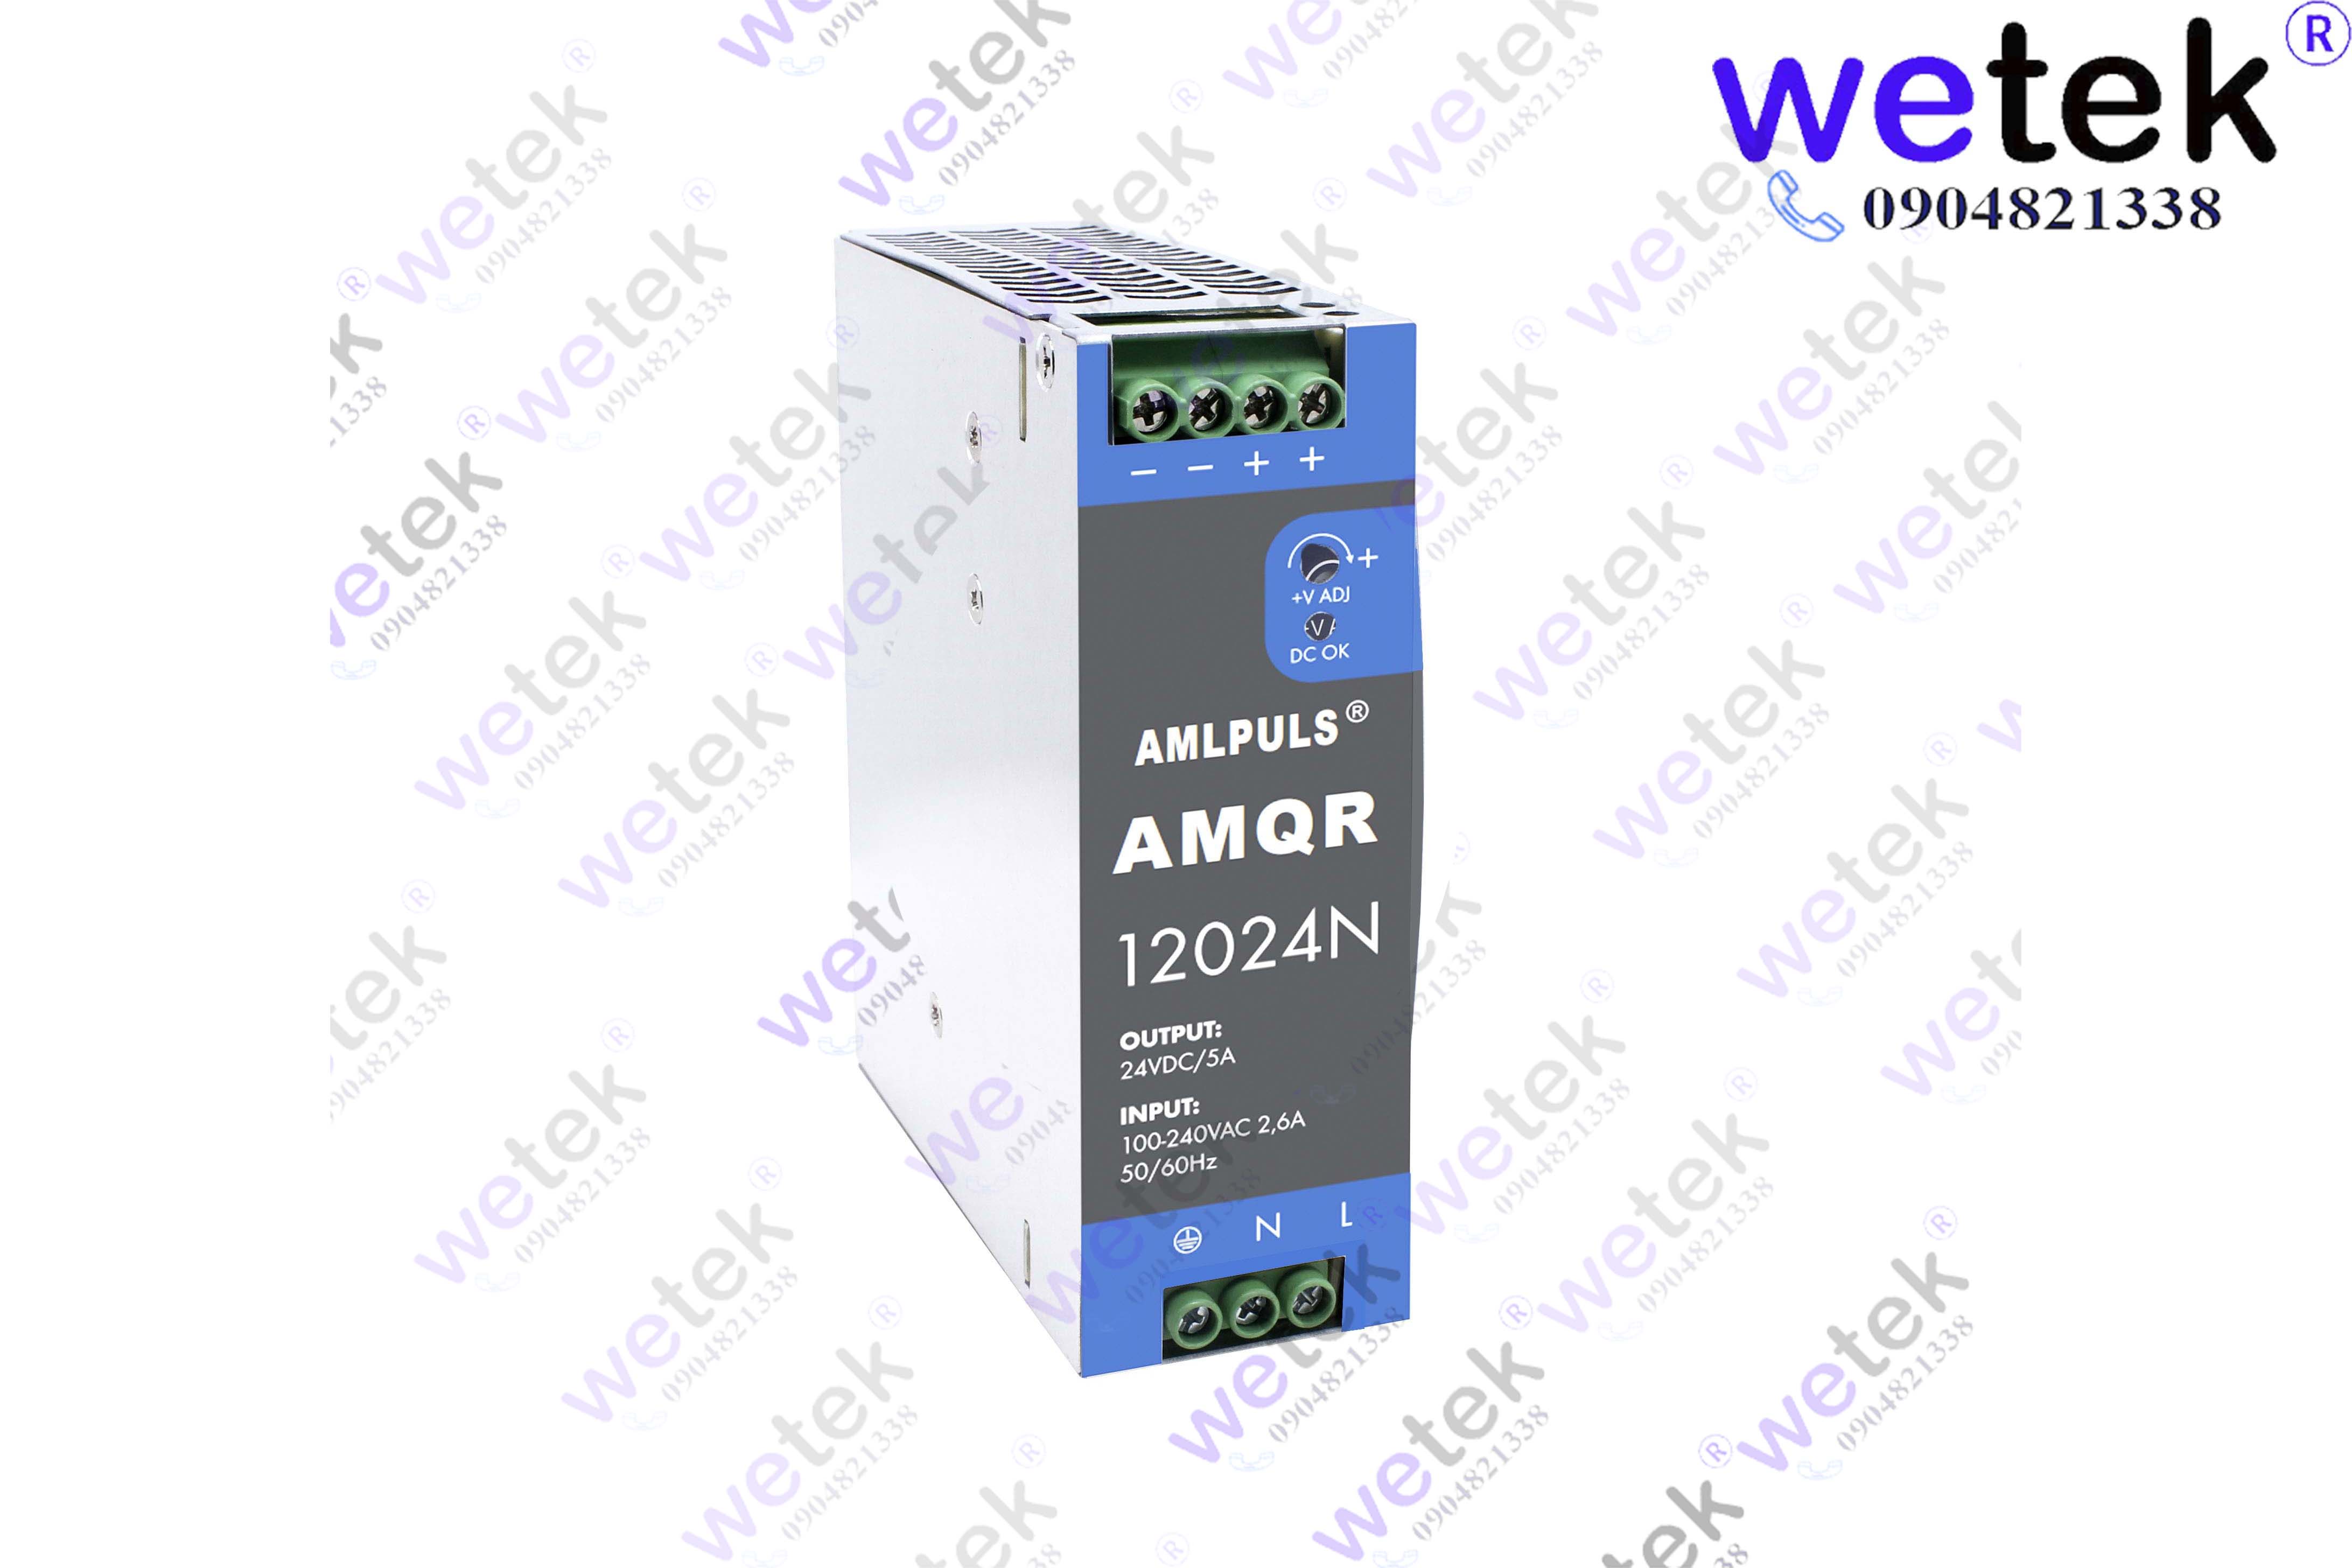 Nguồn xung cài thanh DIN AMQR12024N 120W 24Vdc thương hiệu AMLPULS